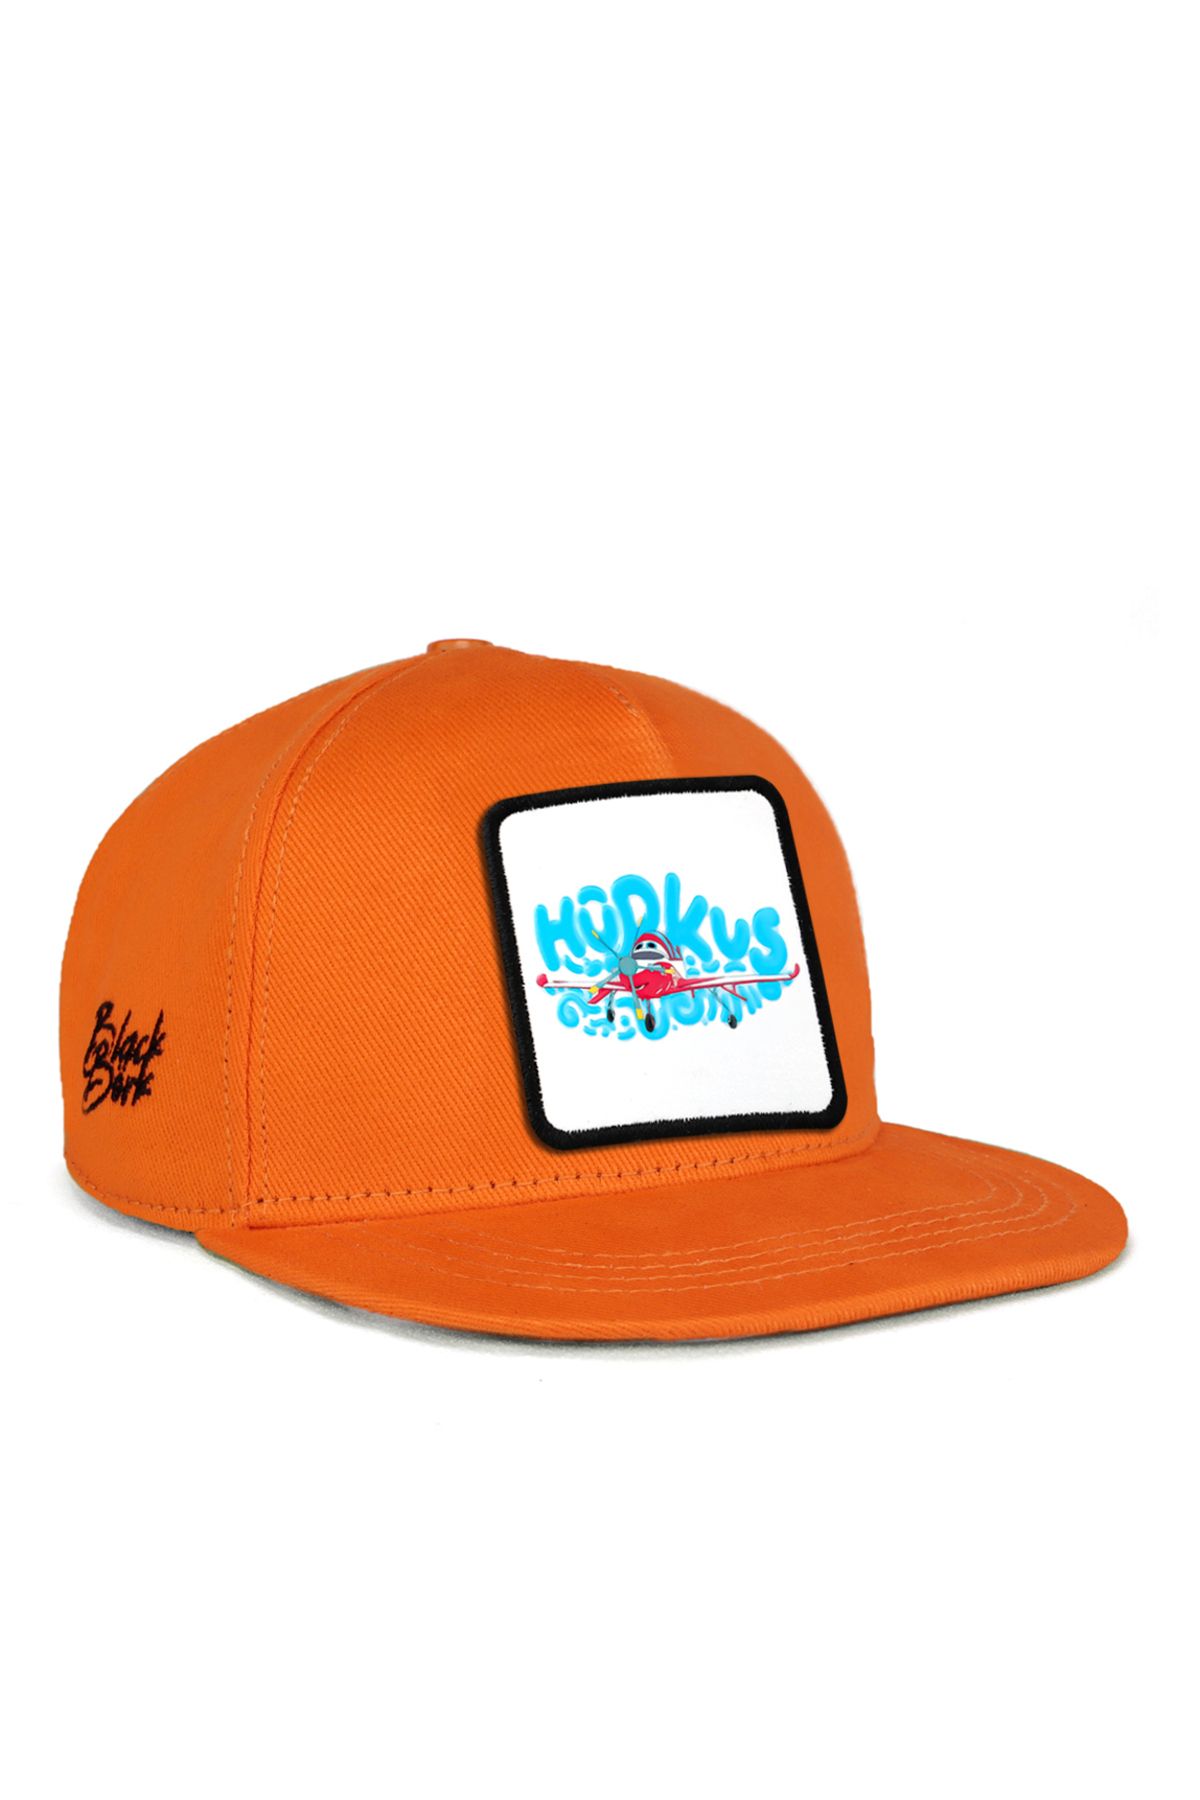 BlackBörk V1 Hip Hop Kids Bulutların Arasında Hürkuş Lisanlı Turuncu Çocuk Şapka